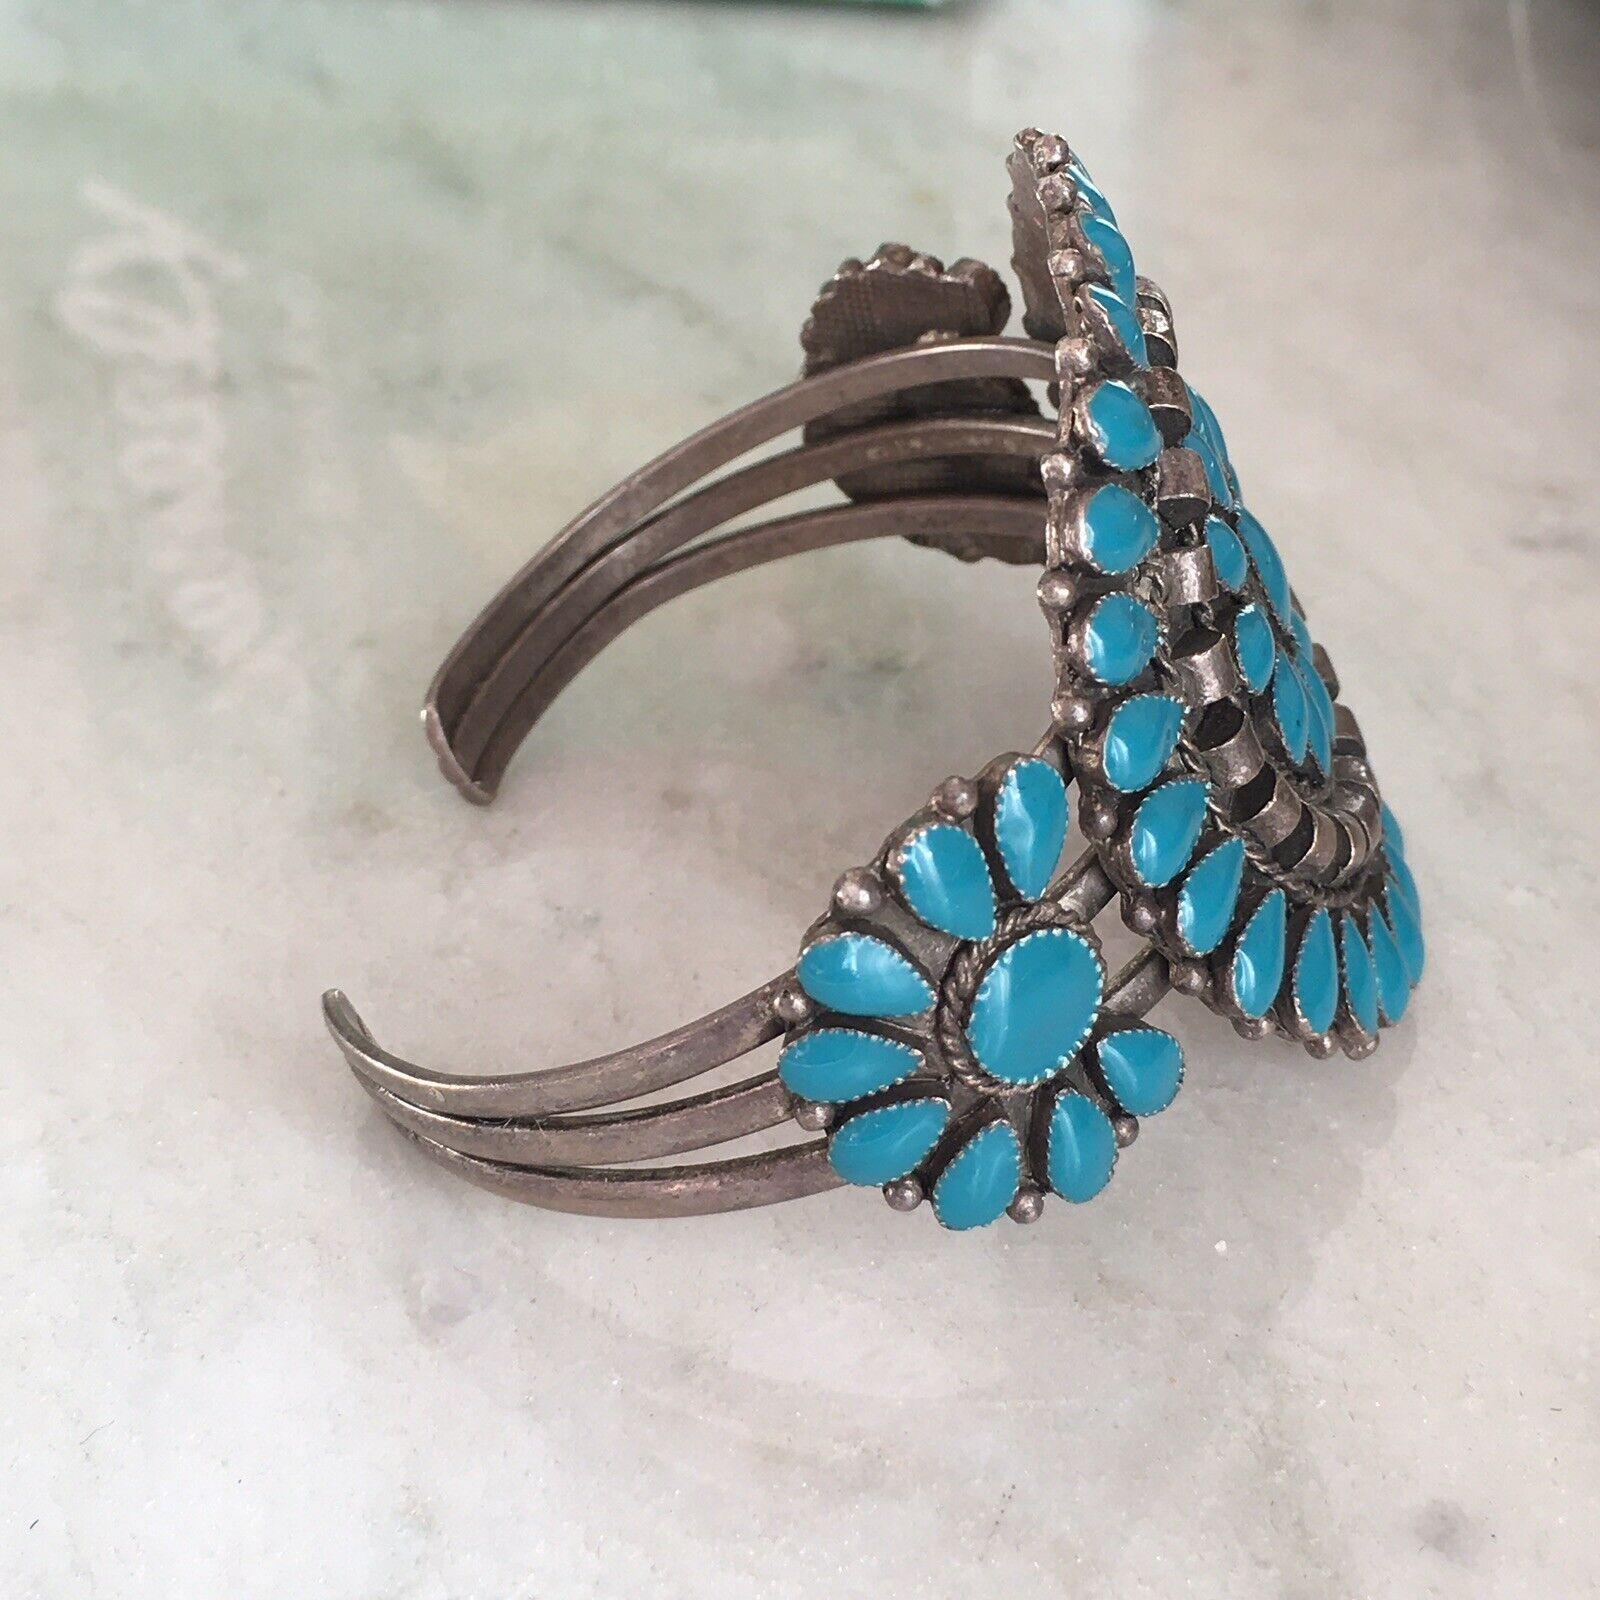 Native American Sterling Silver Hand Made Turquoise Cluster Cuff Bracelet pesant 31,4 grammes, testé Sterling en excellent état, pas de pierres manquantes peut-être Zuni